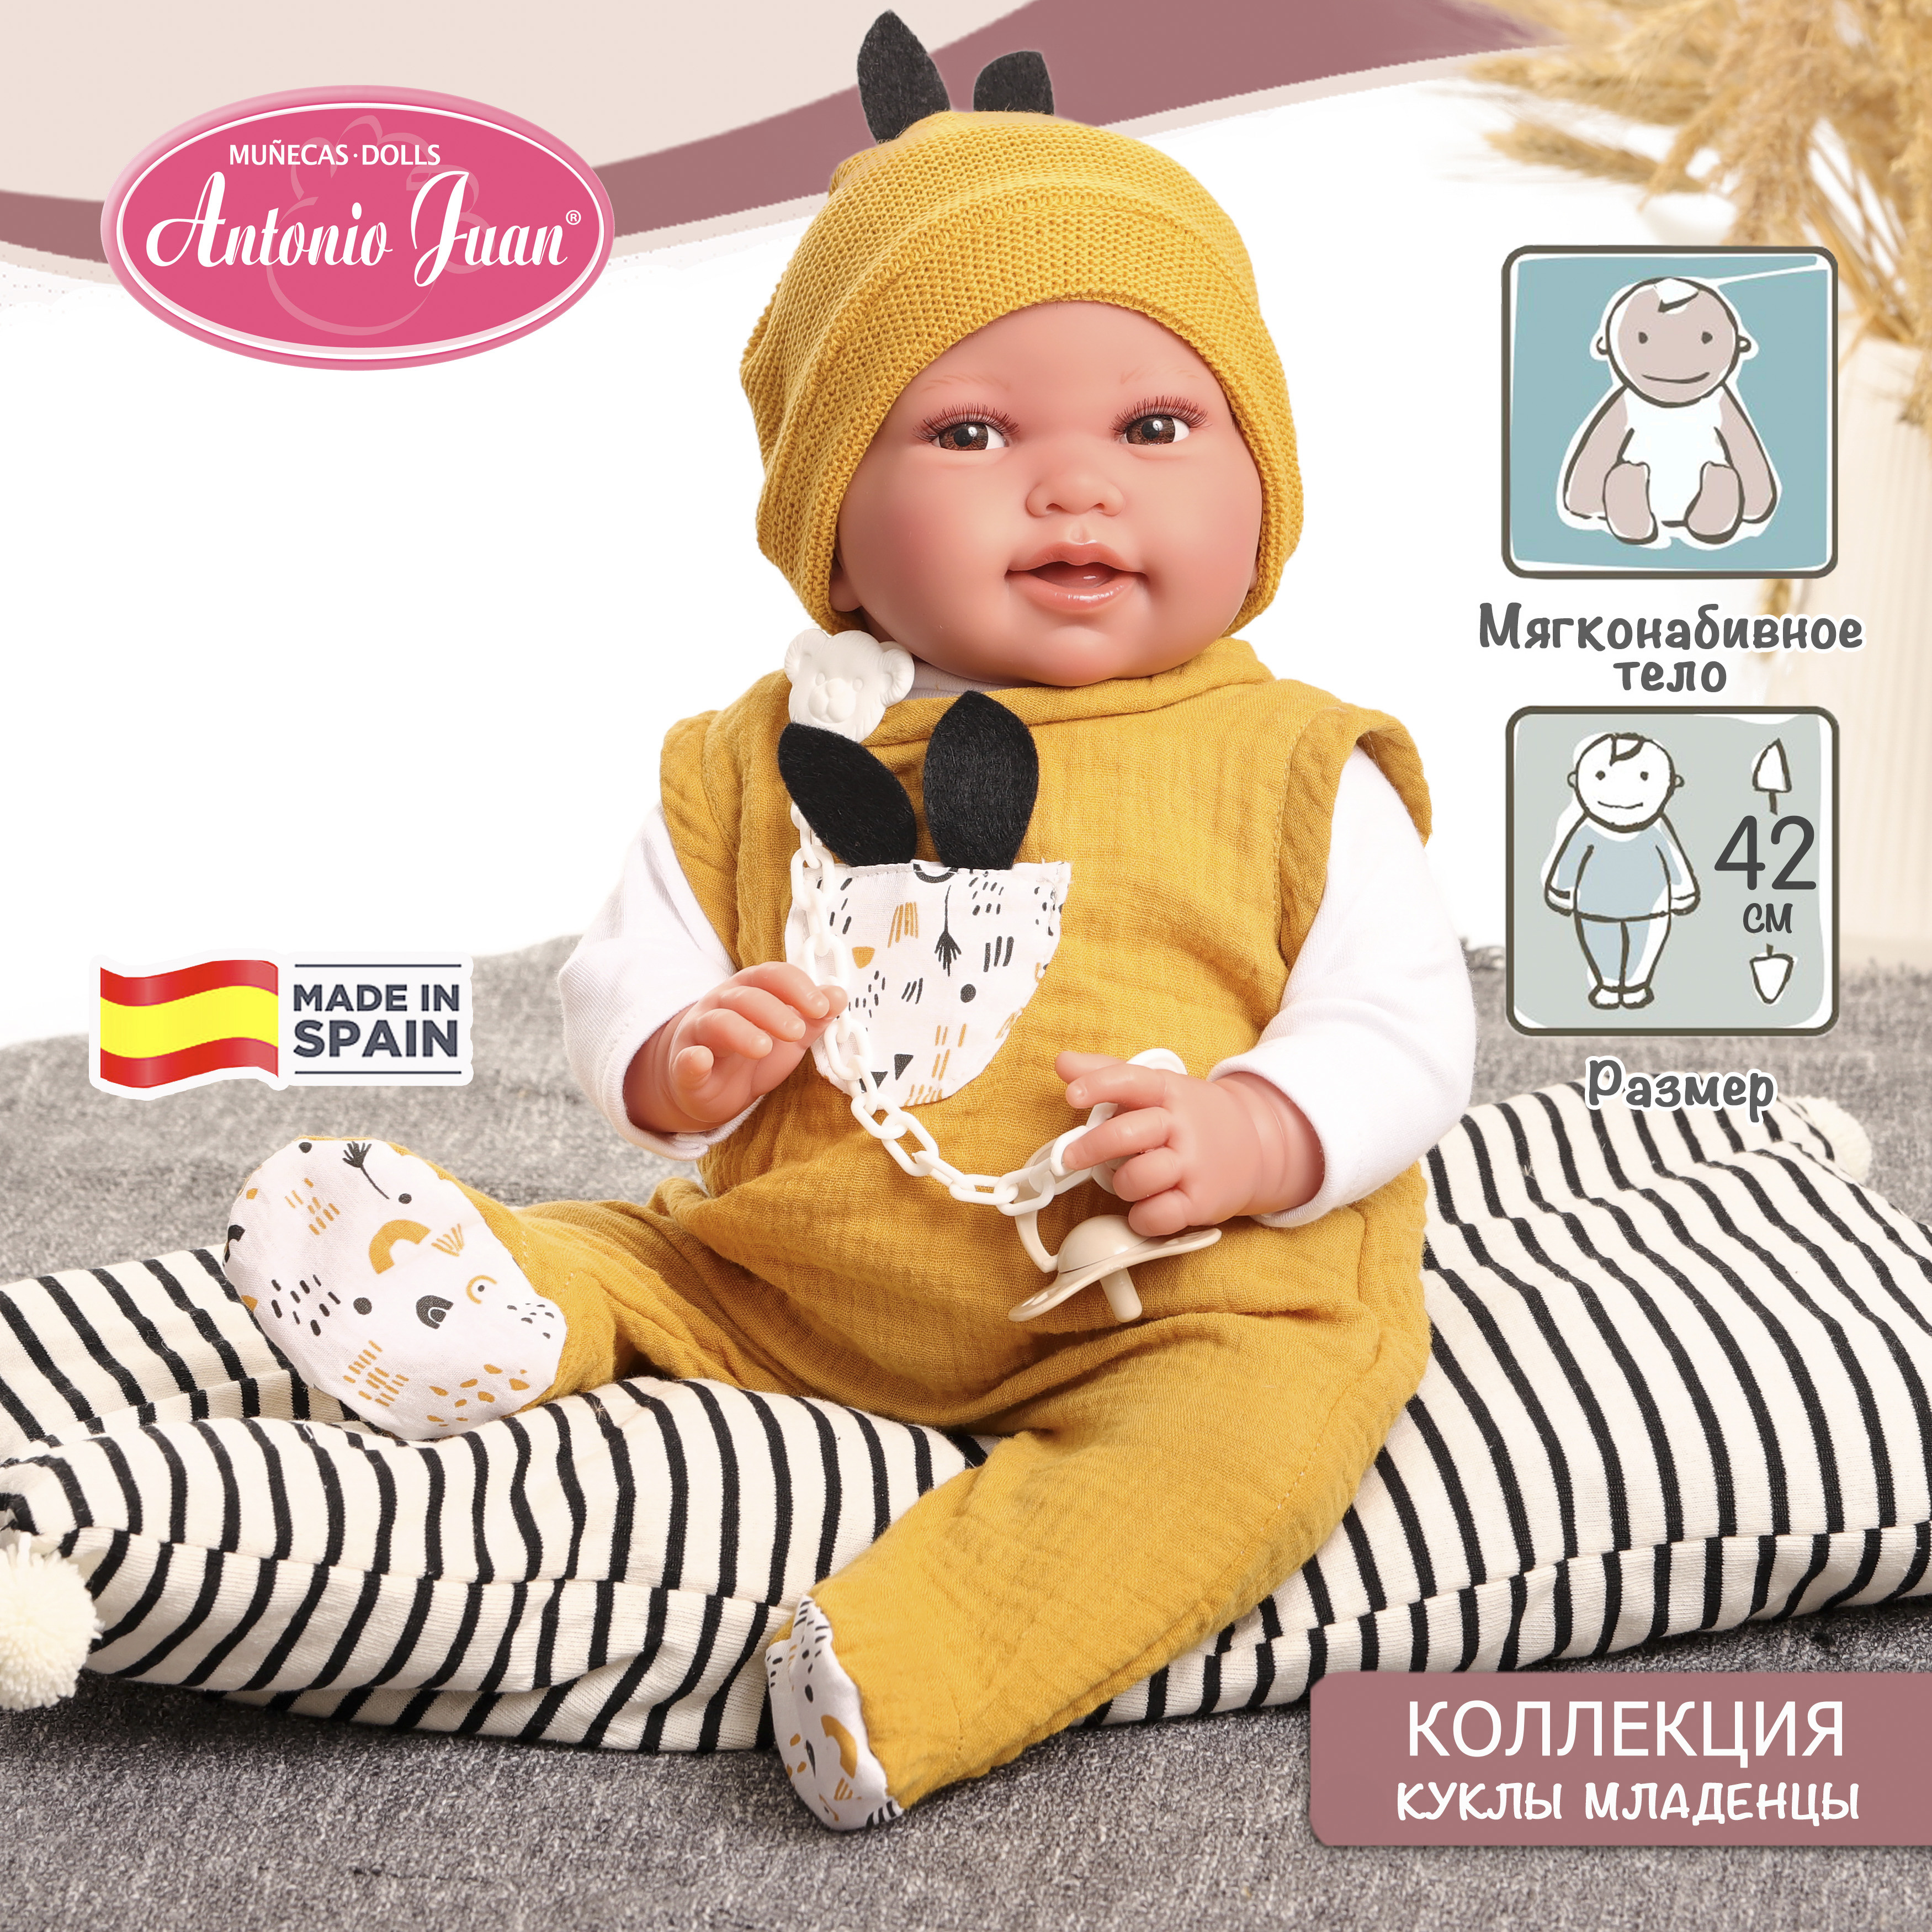 Кукла младенец испанская Antonio Juan Пипо в жёлтом, 42 см, мягконабивная 33234 кукла пупс antonio juan глаша в сумочке переноске 21 см виниловая испанская 85211